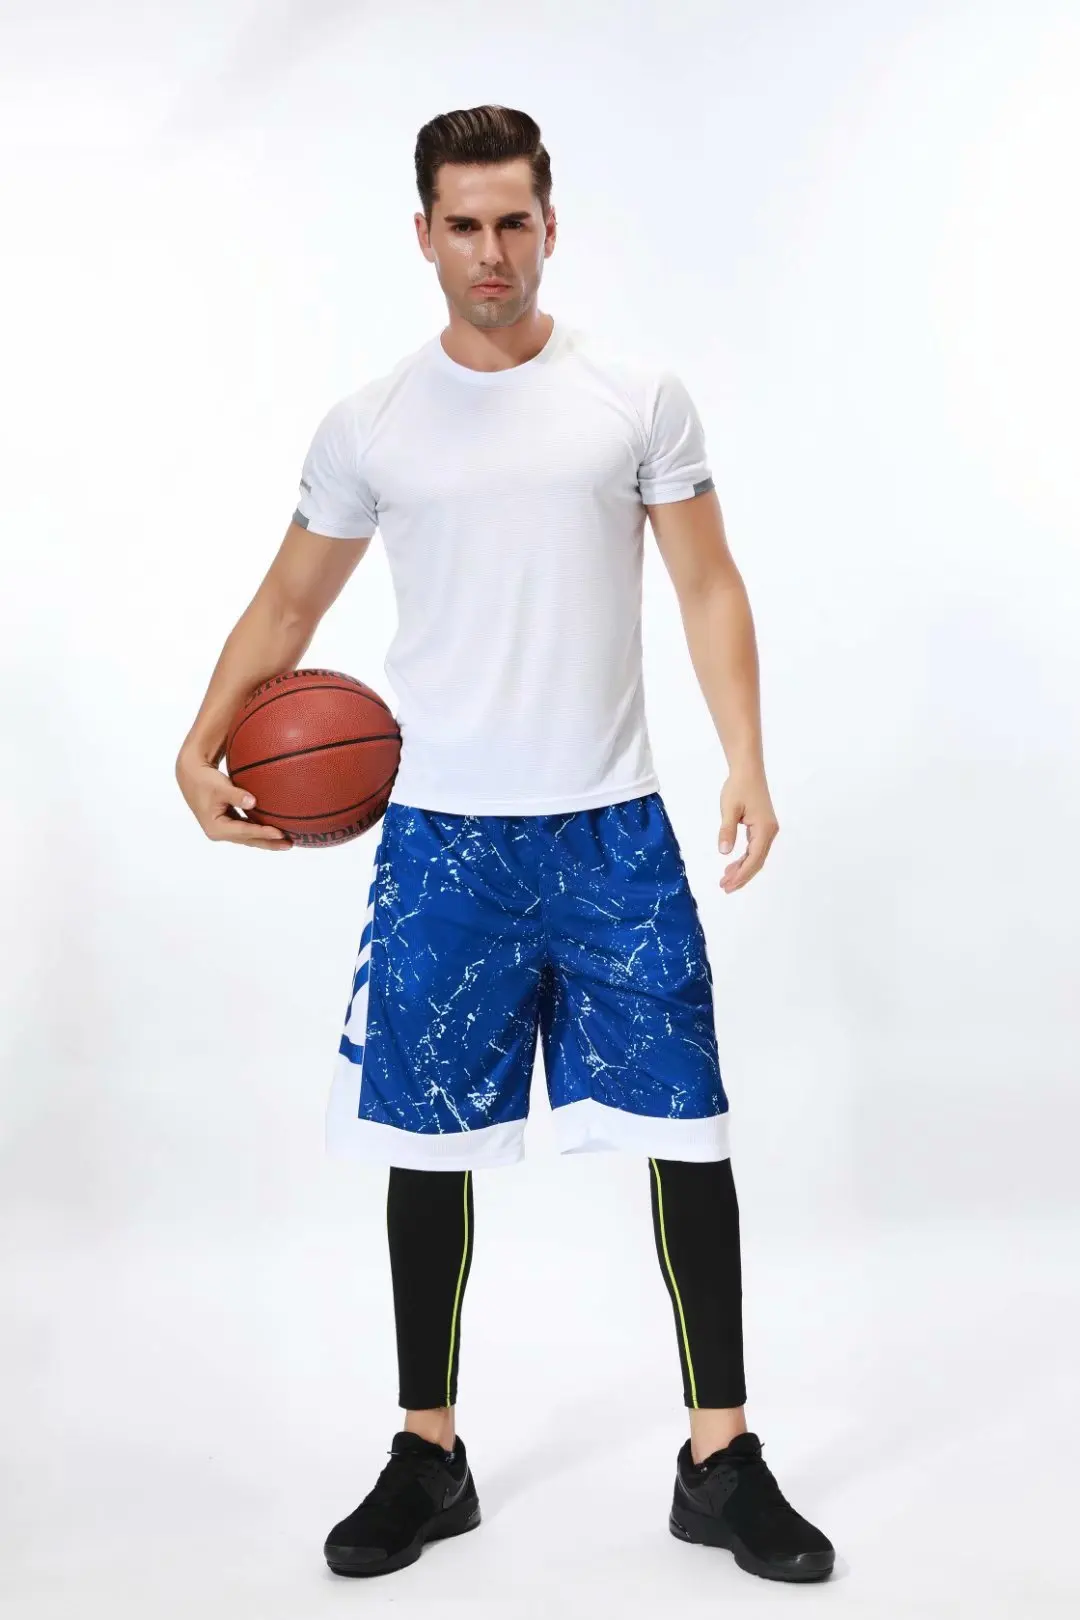 Баскетбольные шорты быстросохнущие беговые фитнес-плотно дышащие тренировочные мужские шорты для бега для спортзала для игры в баскетбол спортивные шорты наборы